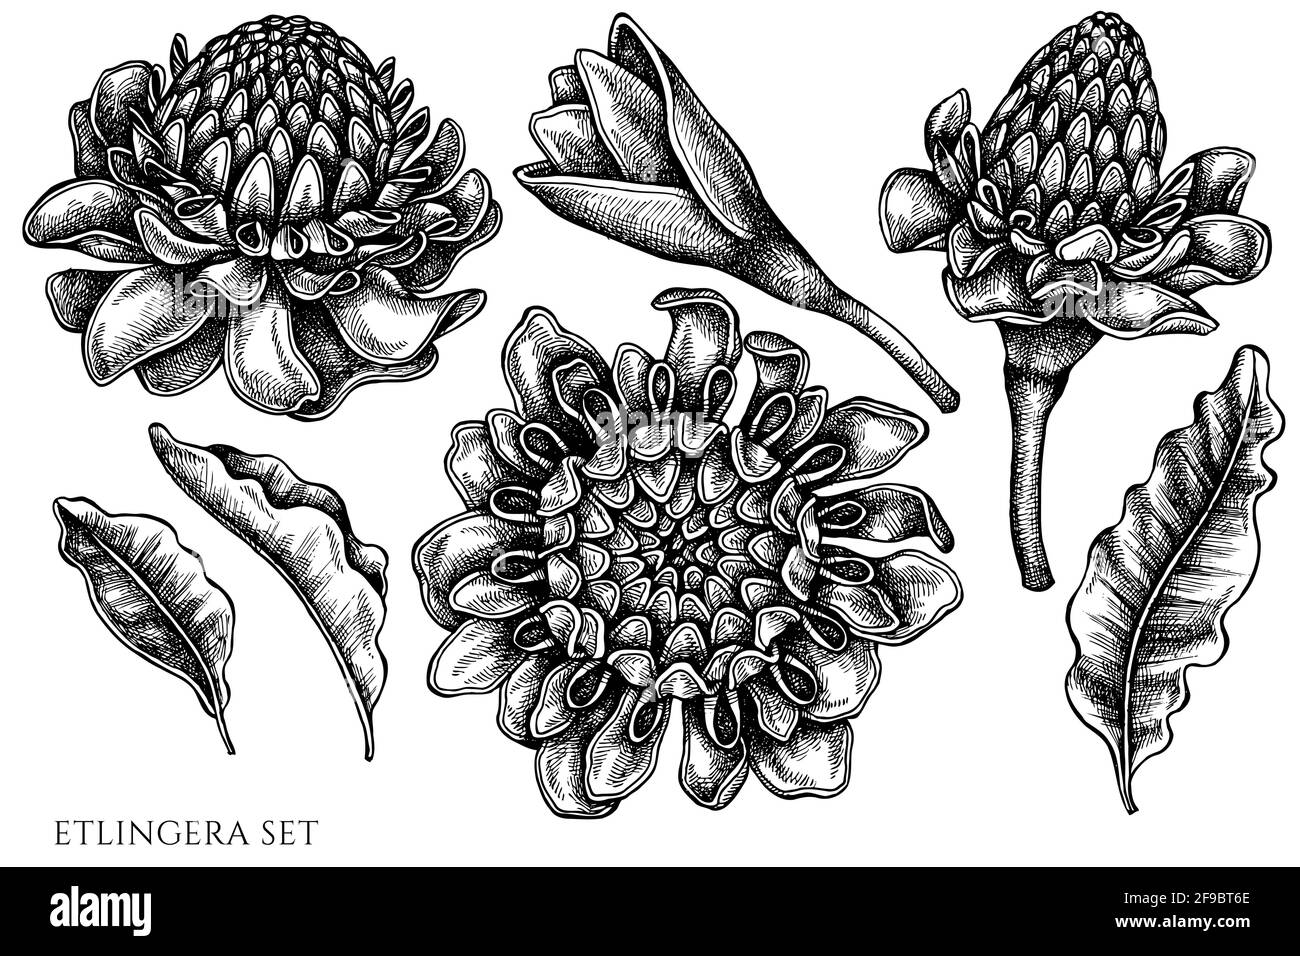 Serie vettoriale di etlingera bianca e nera disegnata a mano Illustrazione Vettoriale